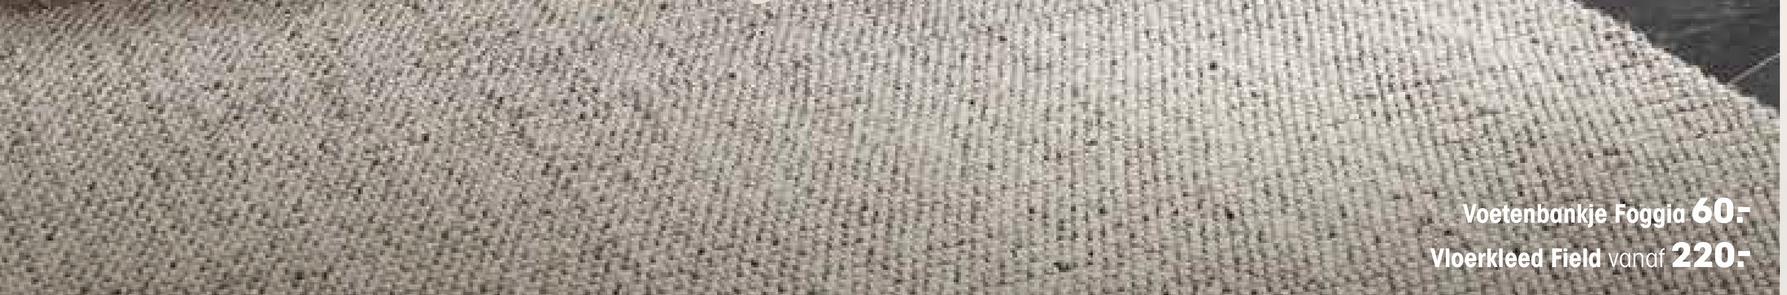 Vloerkleed Field Bruin Handgemaakt vloerkleed Field is gemaakt van 70% wol en 30% polyester. Het formaat van dit kleed is 230x160 centimeter.